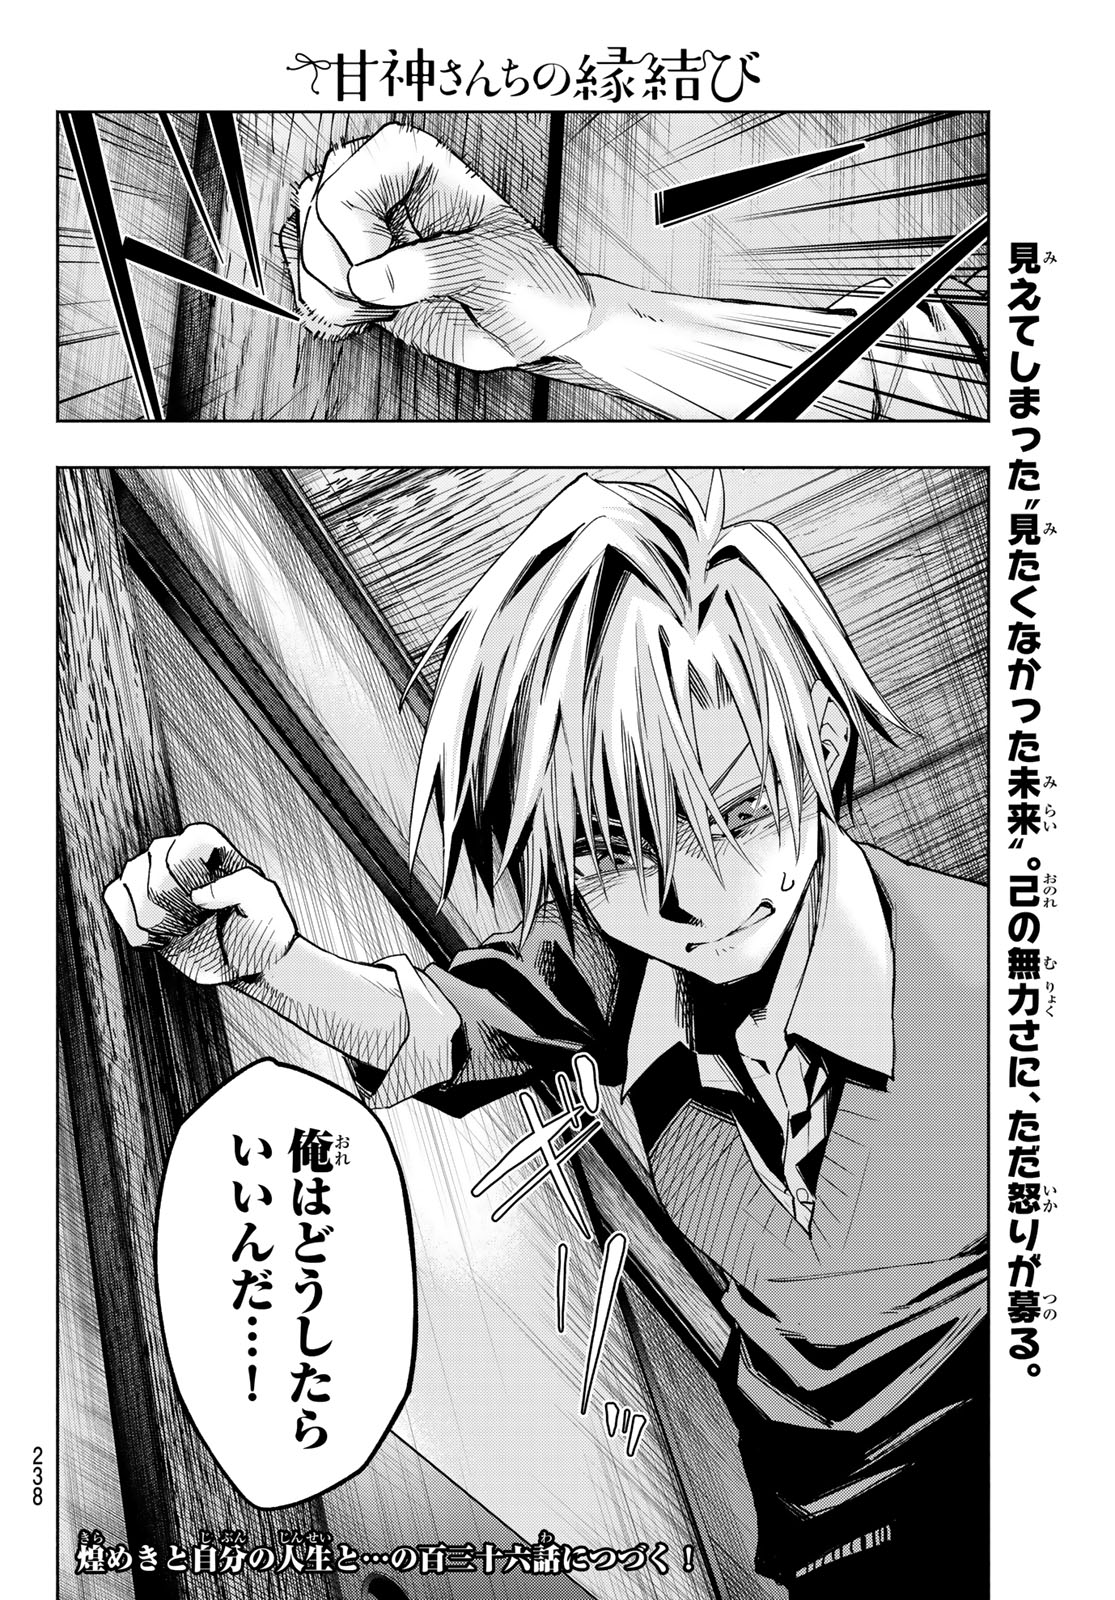 Amagami-san Chi no Enmusubi - Chapter 135 - Page 20